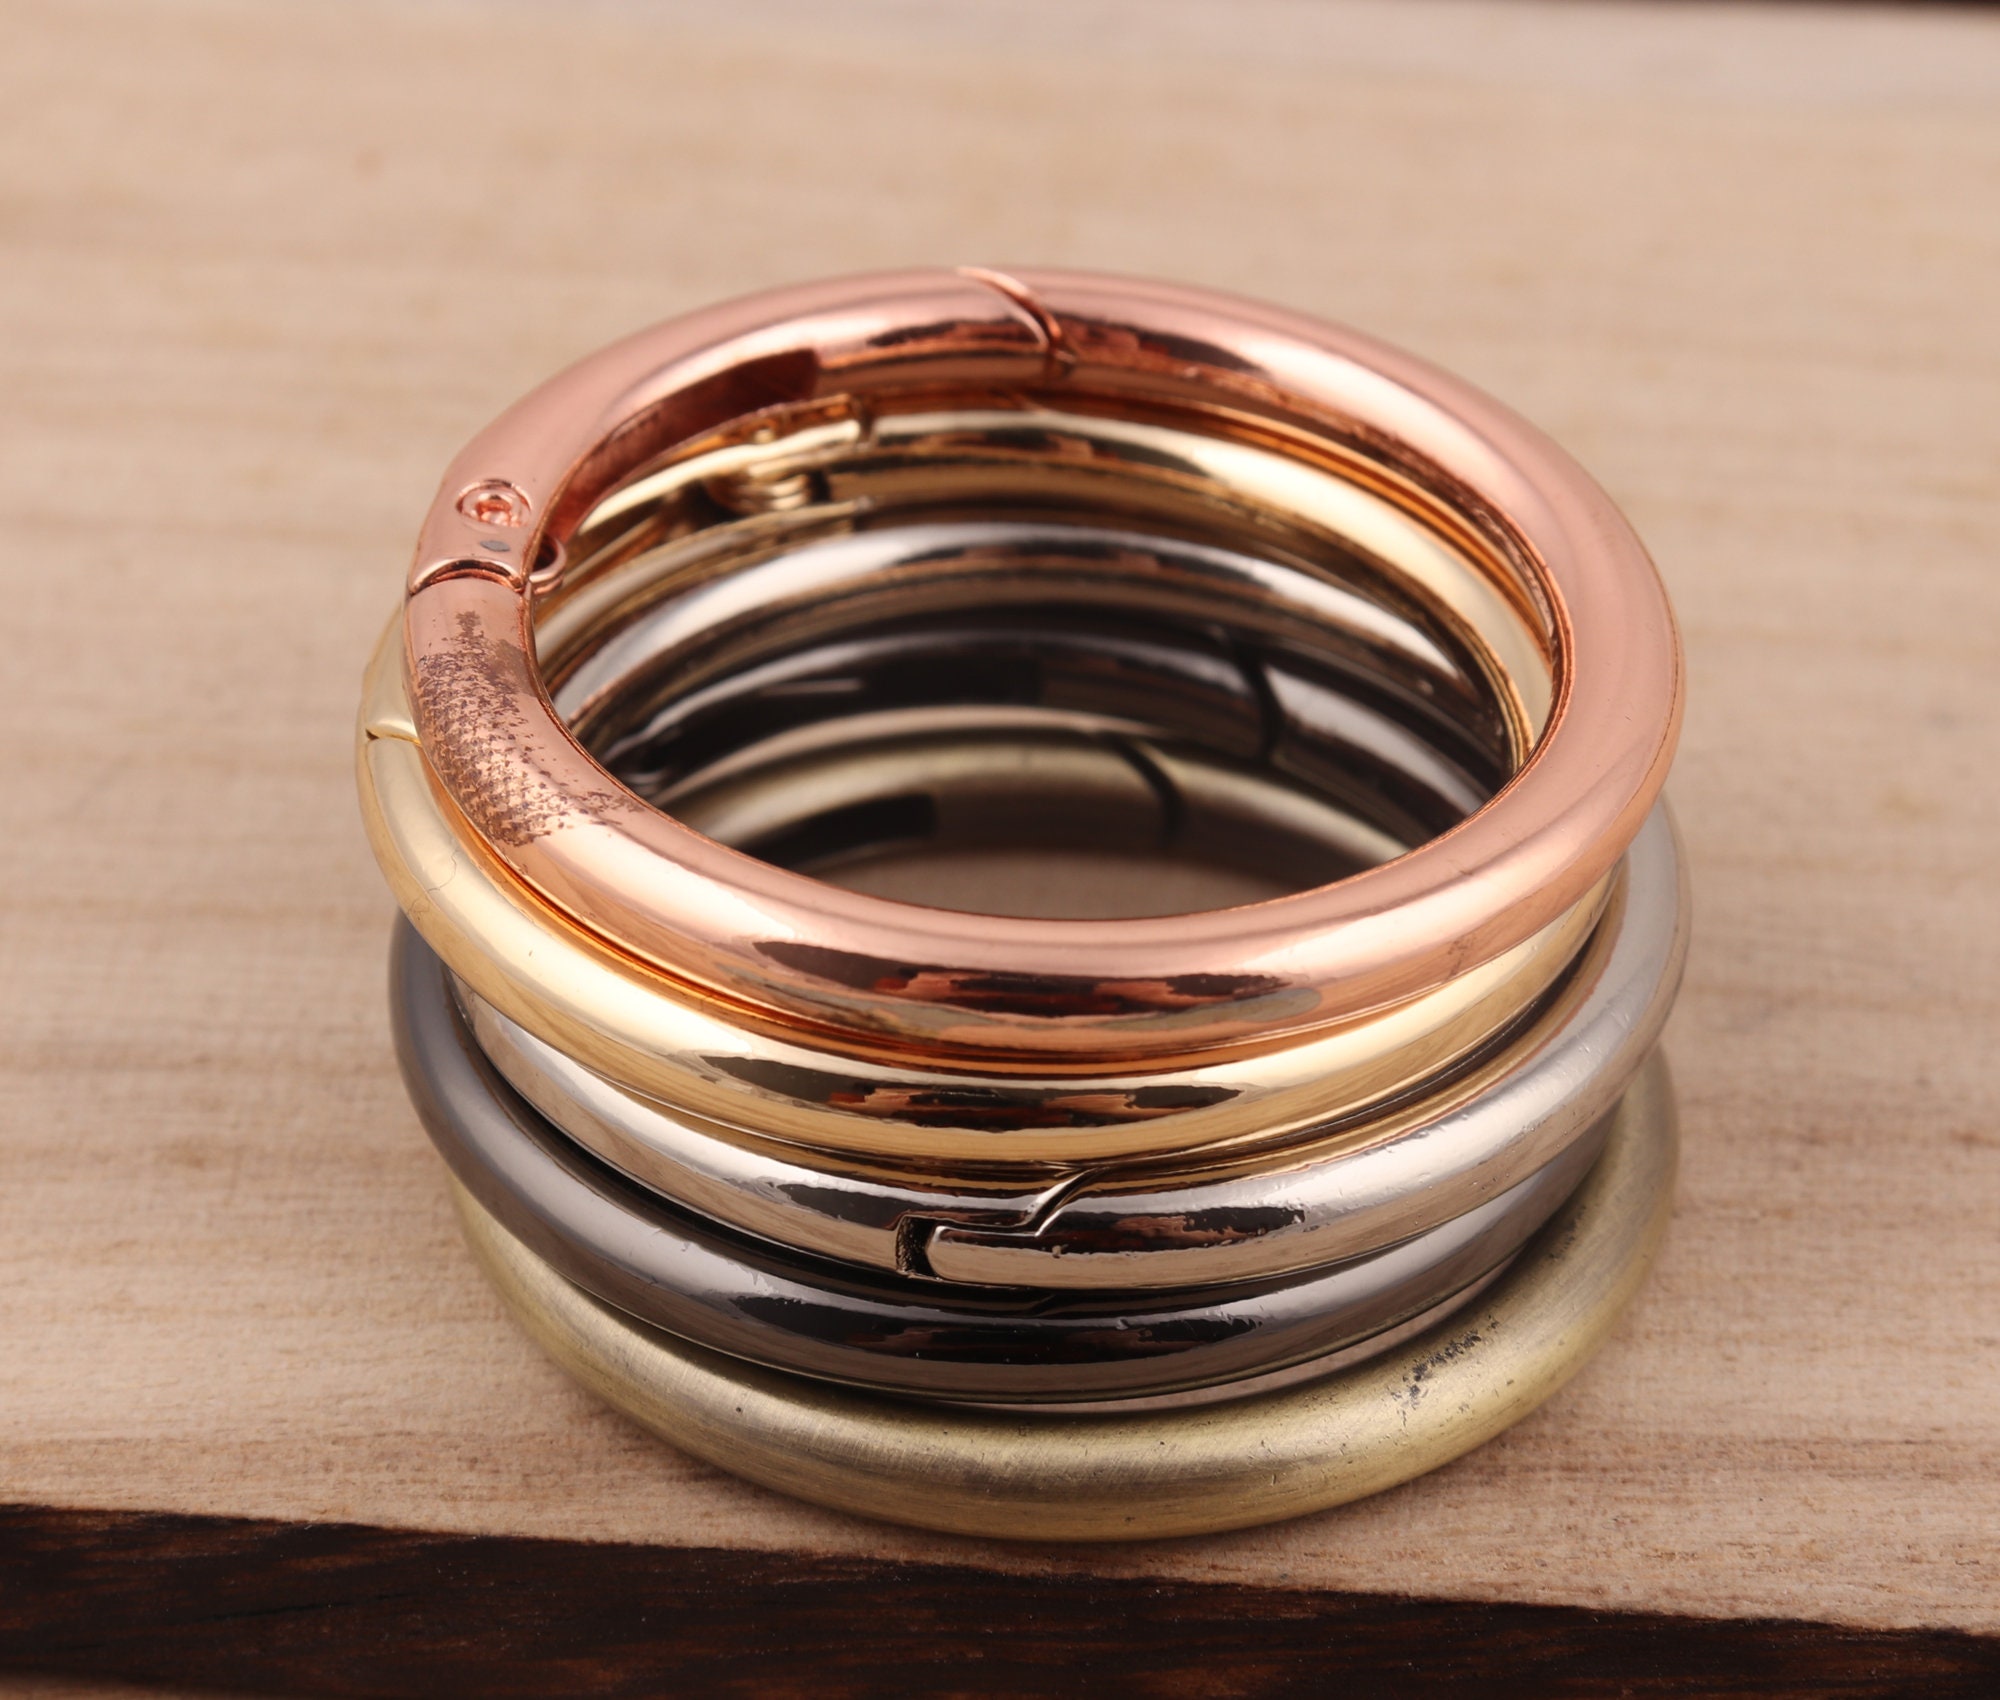 Wealrit 10 pcs Round Carabiner Gold Spring O Rings Keyring Buckle Metal O  Ring(Inner Diameter: 0.5)